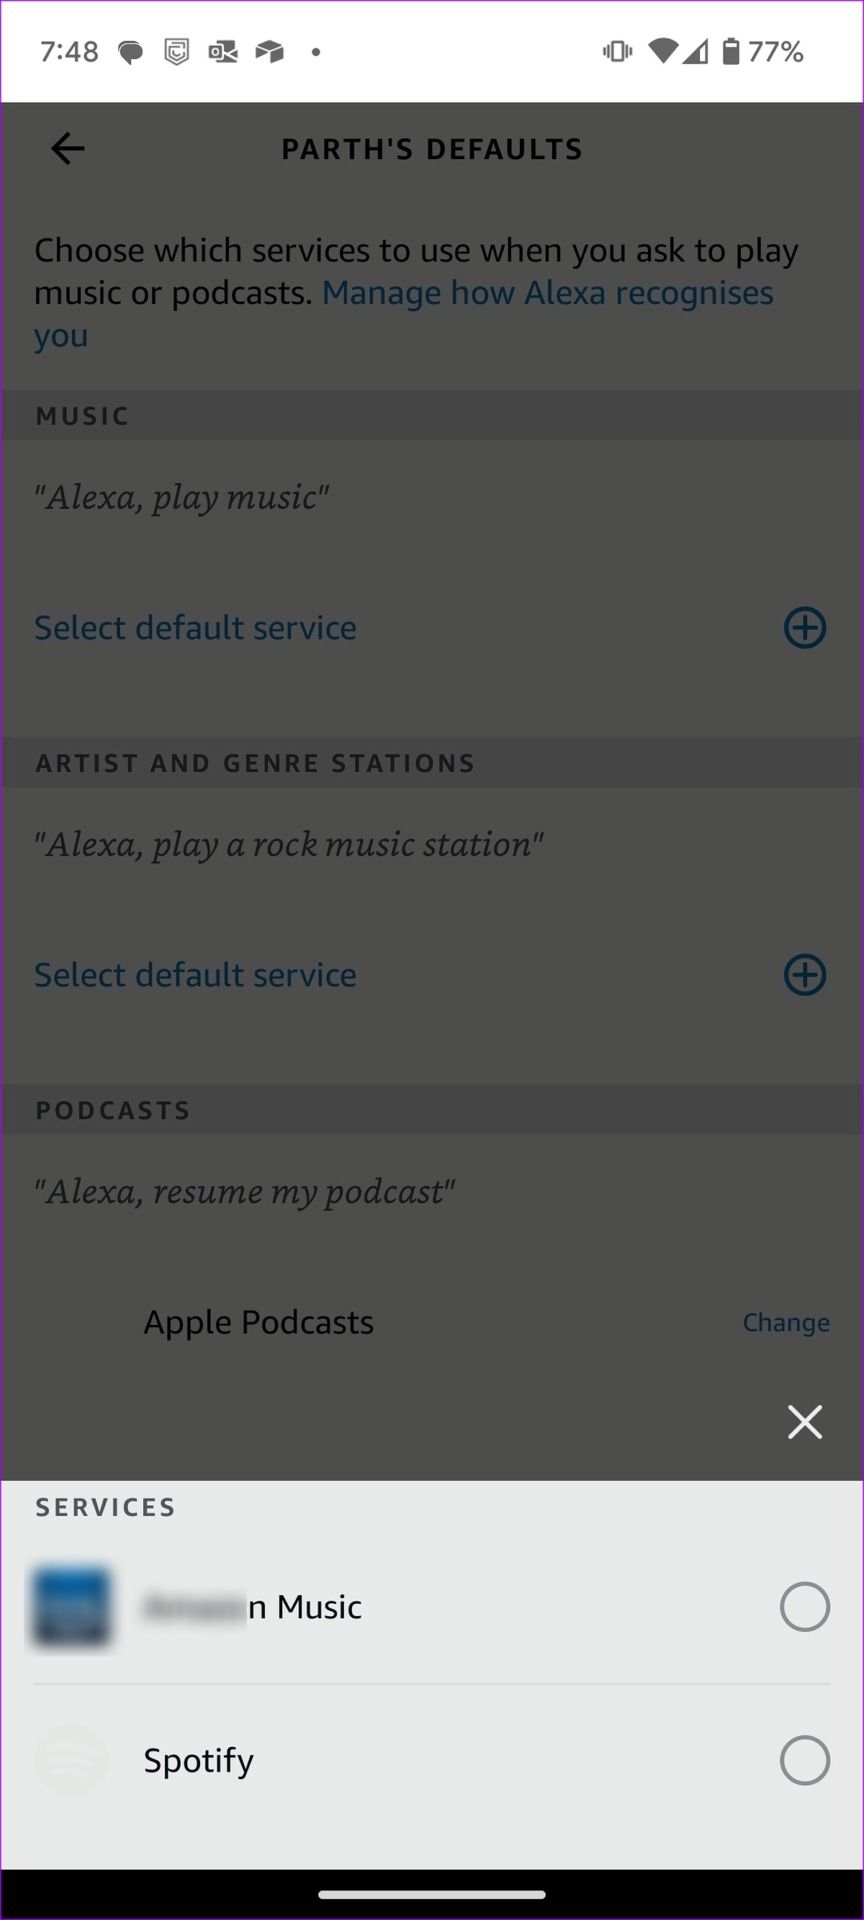 Apple Music as default in Alexa